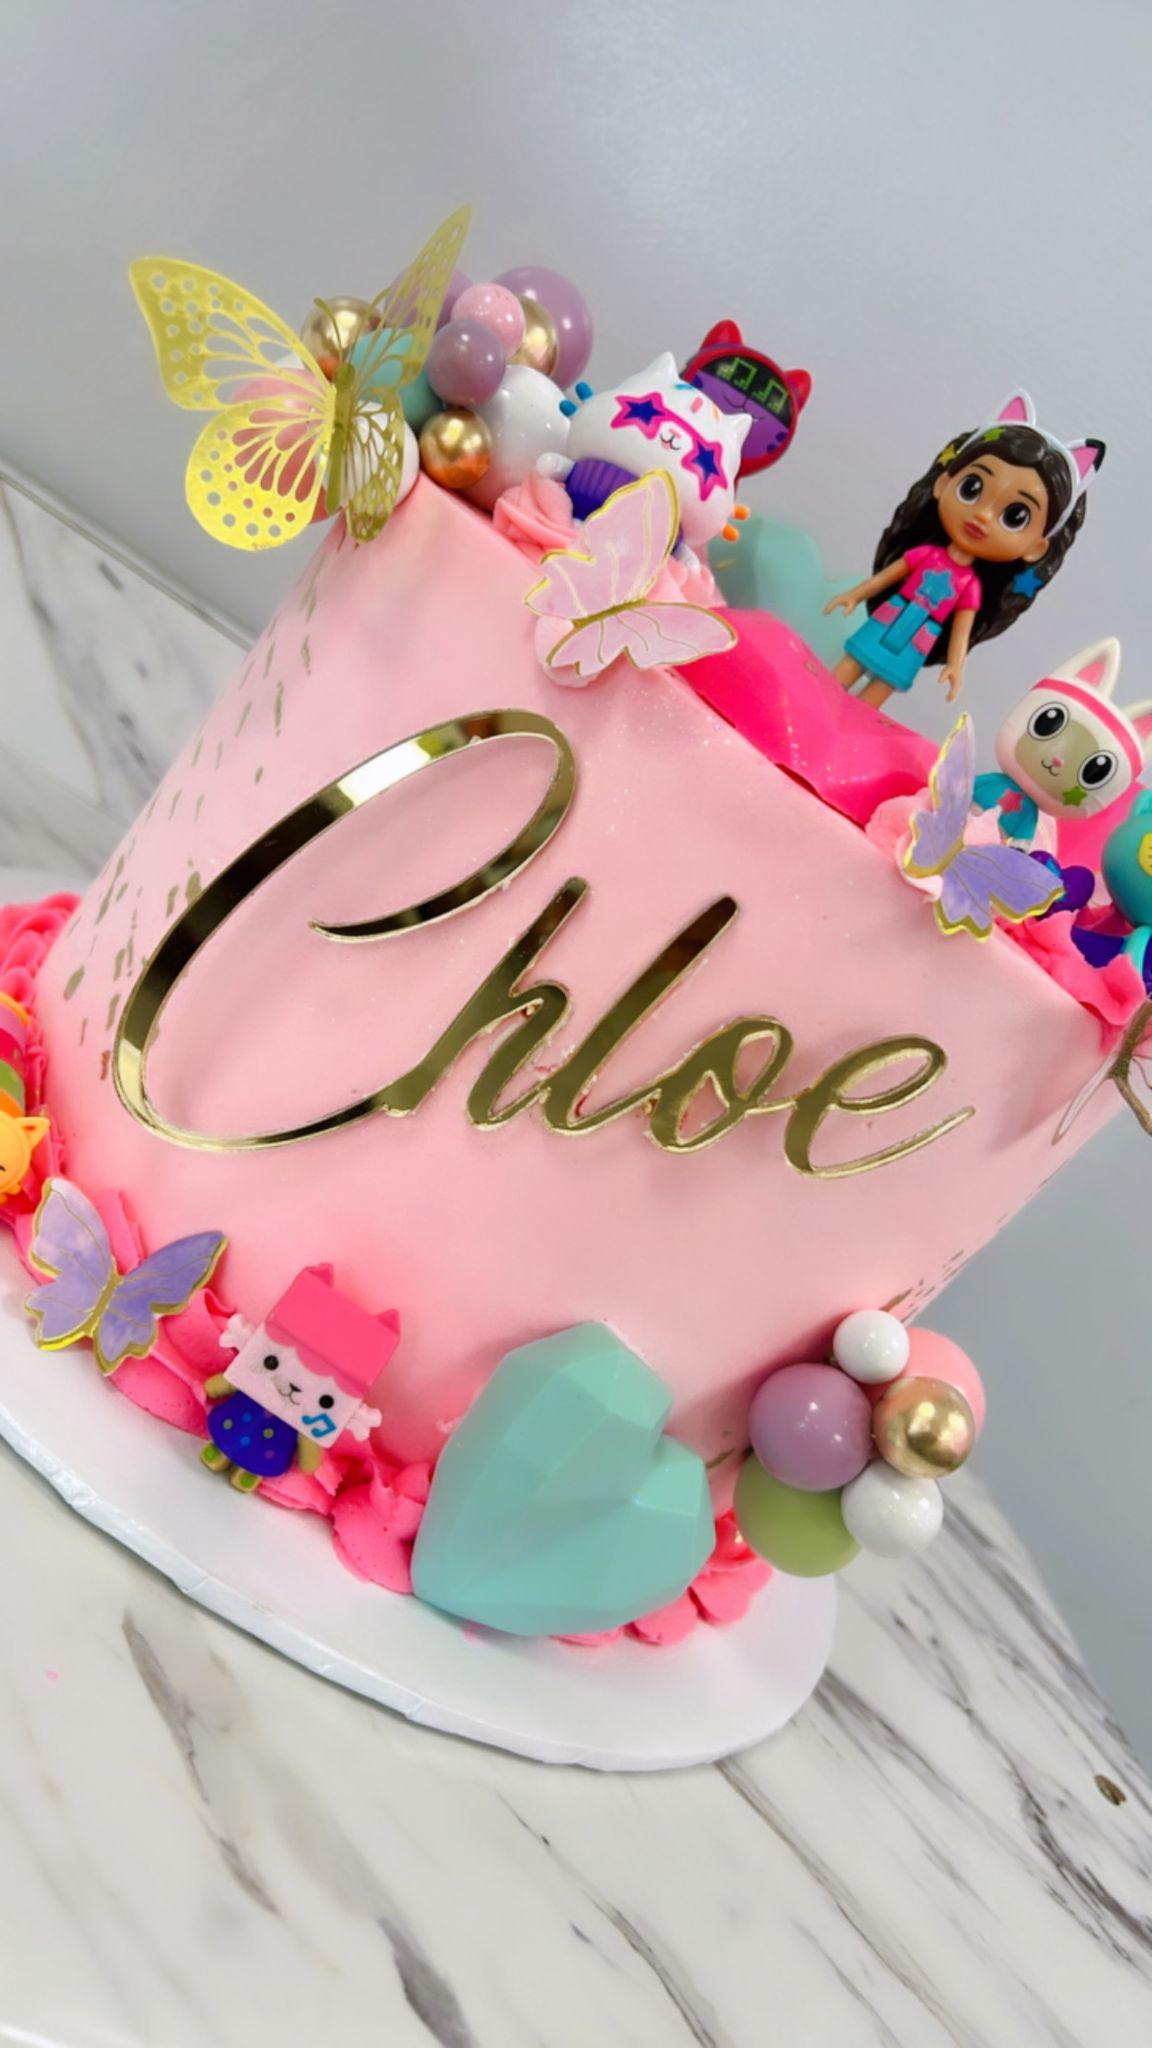 Gabby's Dollhouse Cake – Sweet Treats Delight Bakery